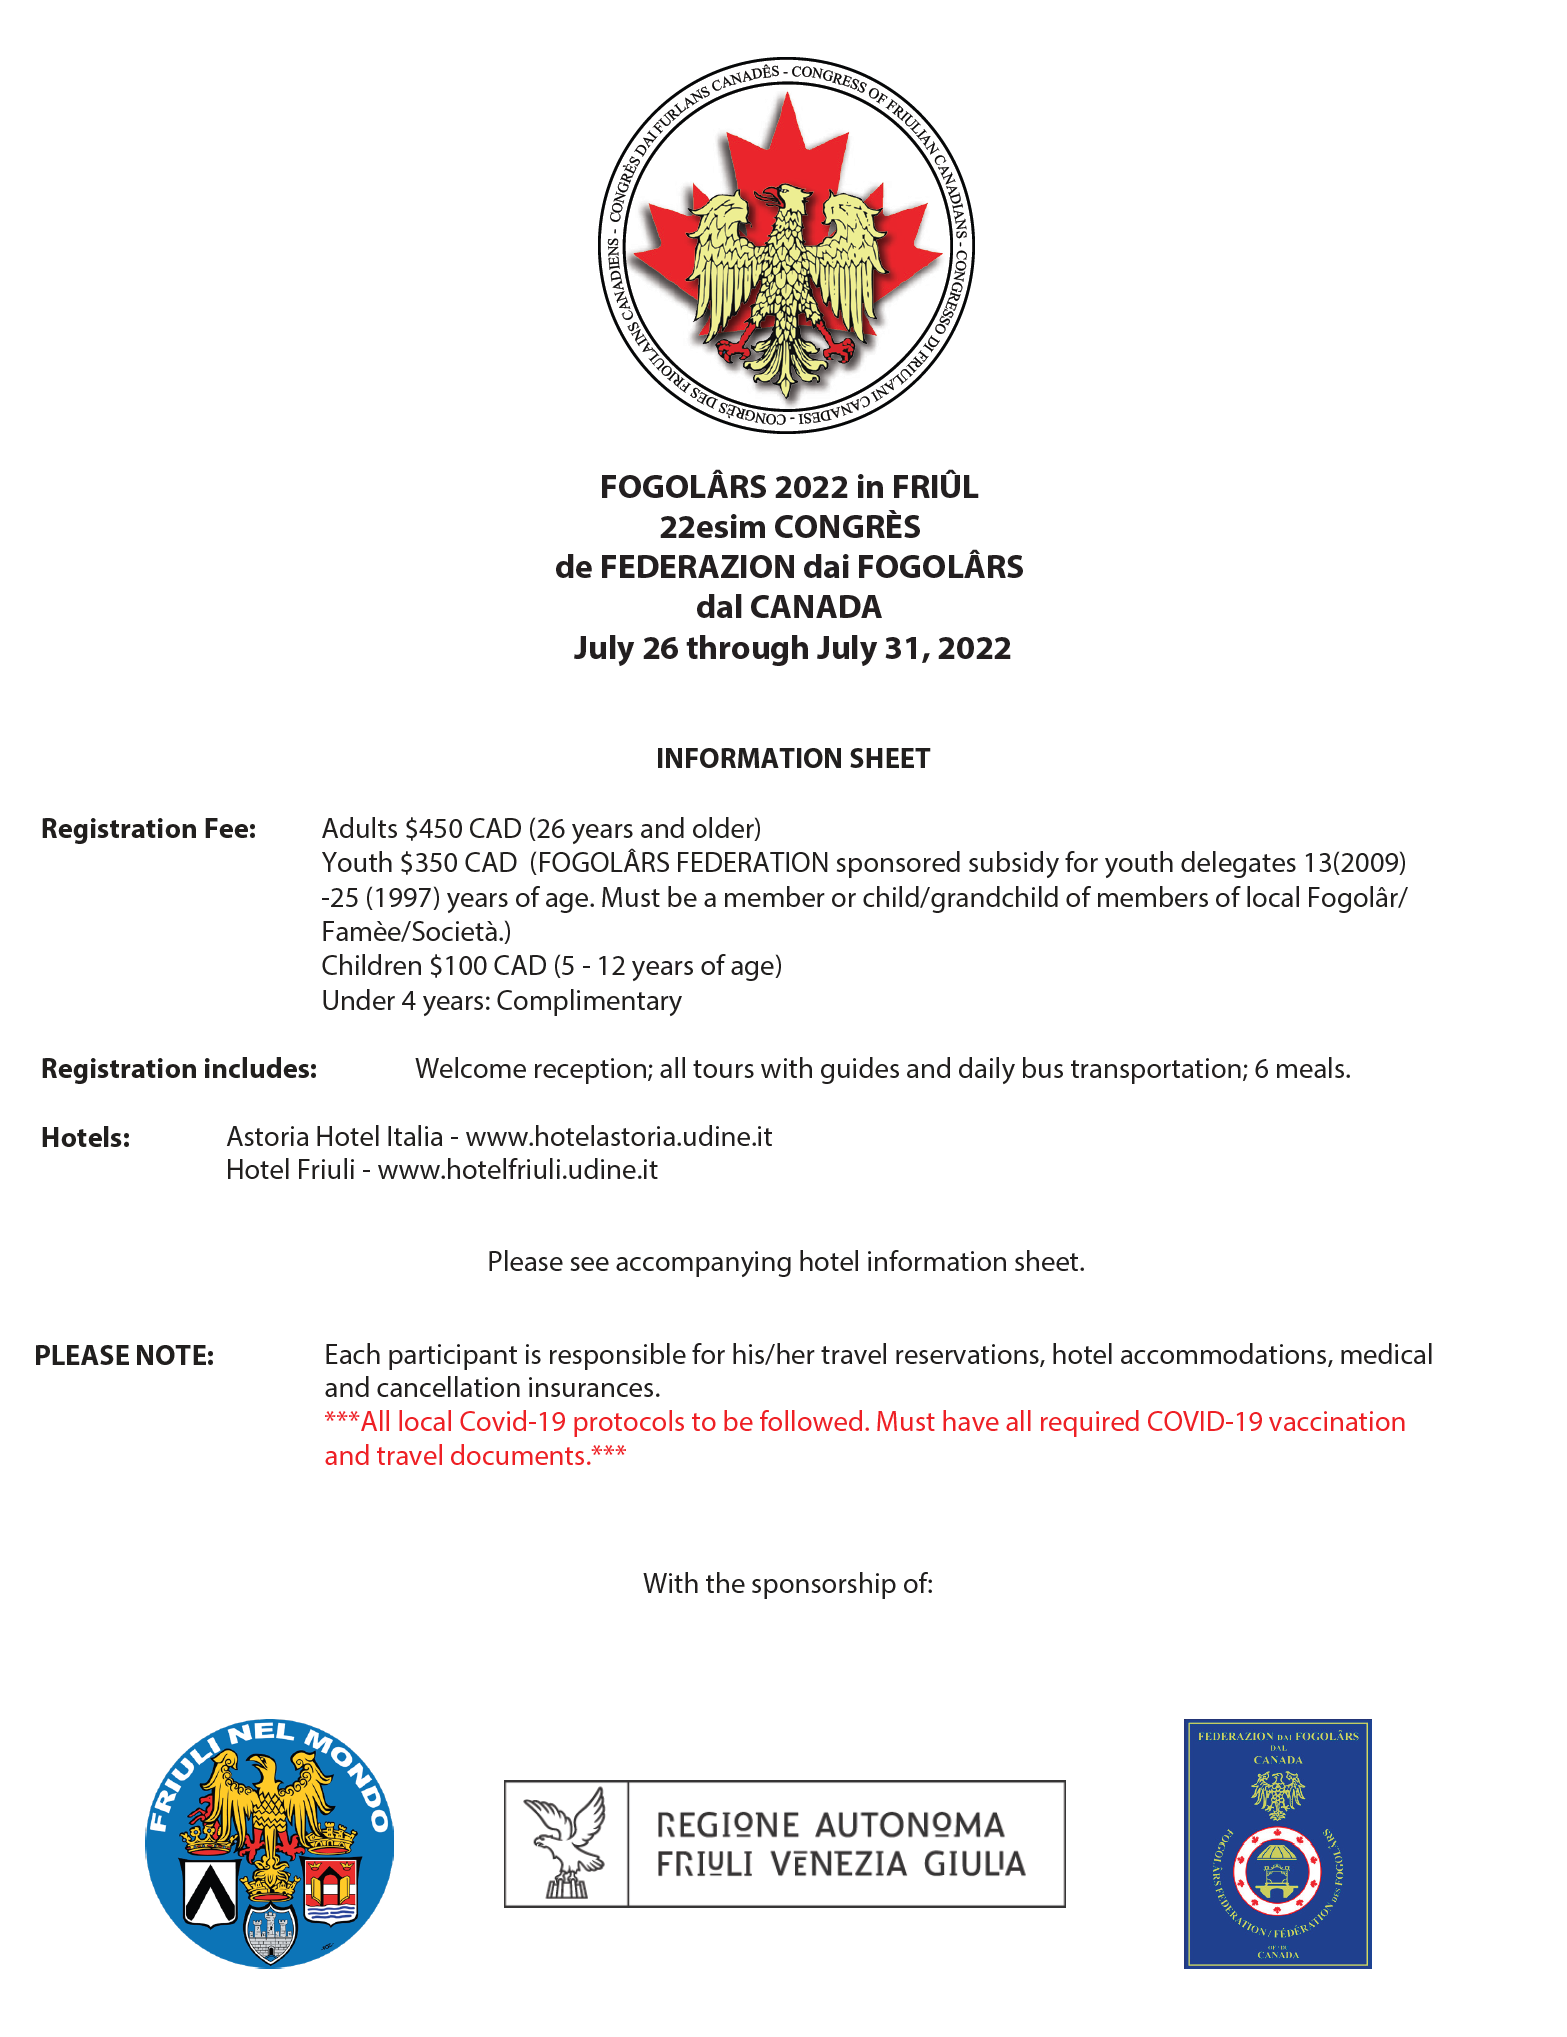 Fogolars 2022 in Friuli - Registration Information